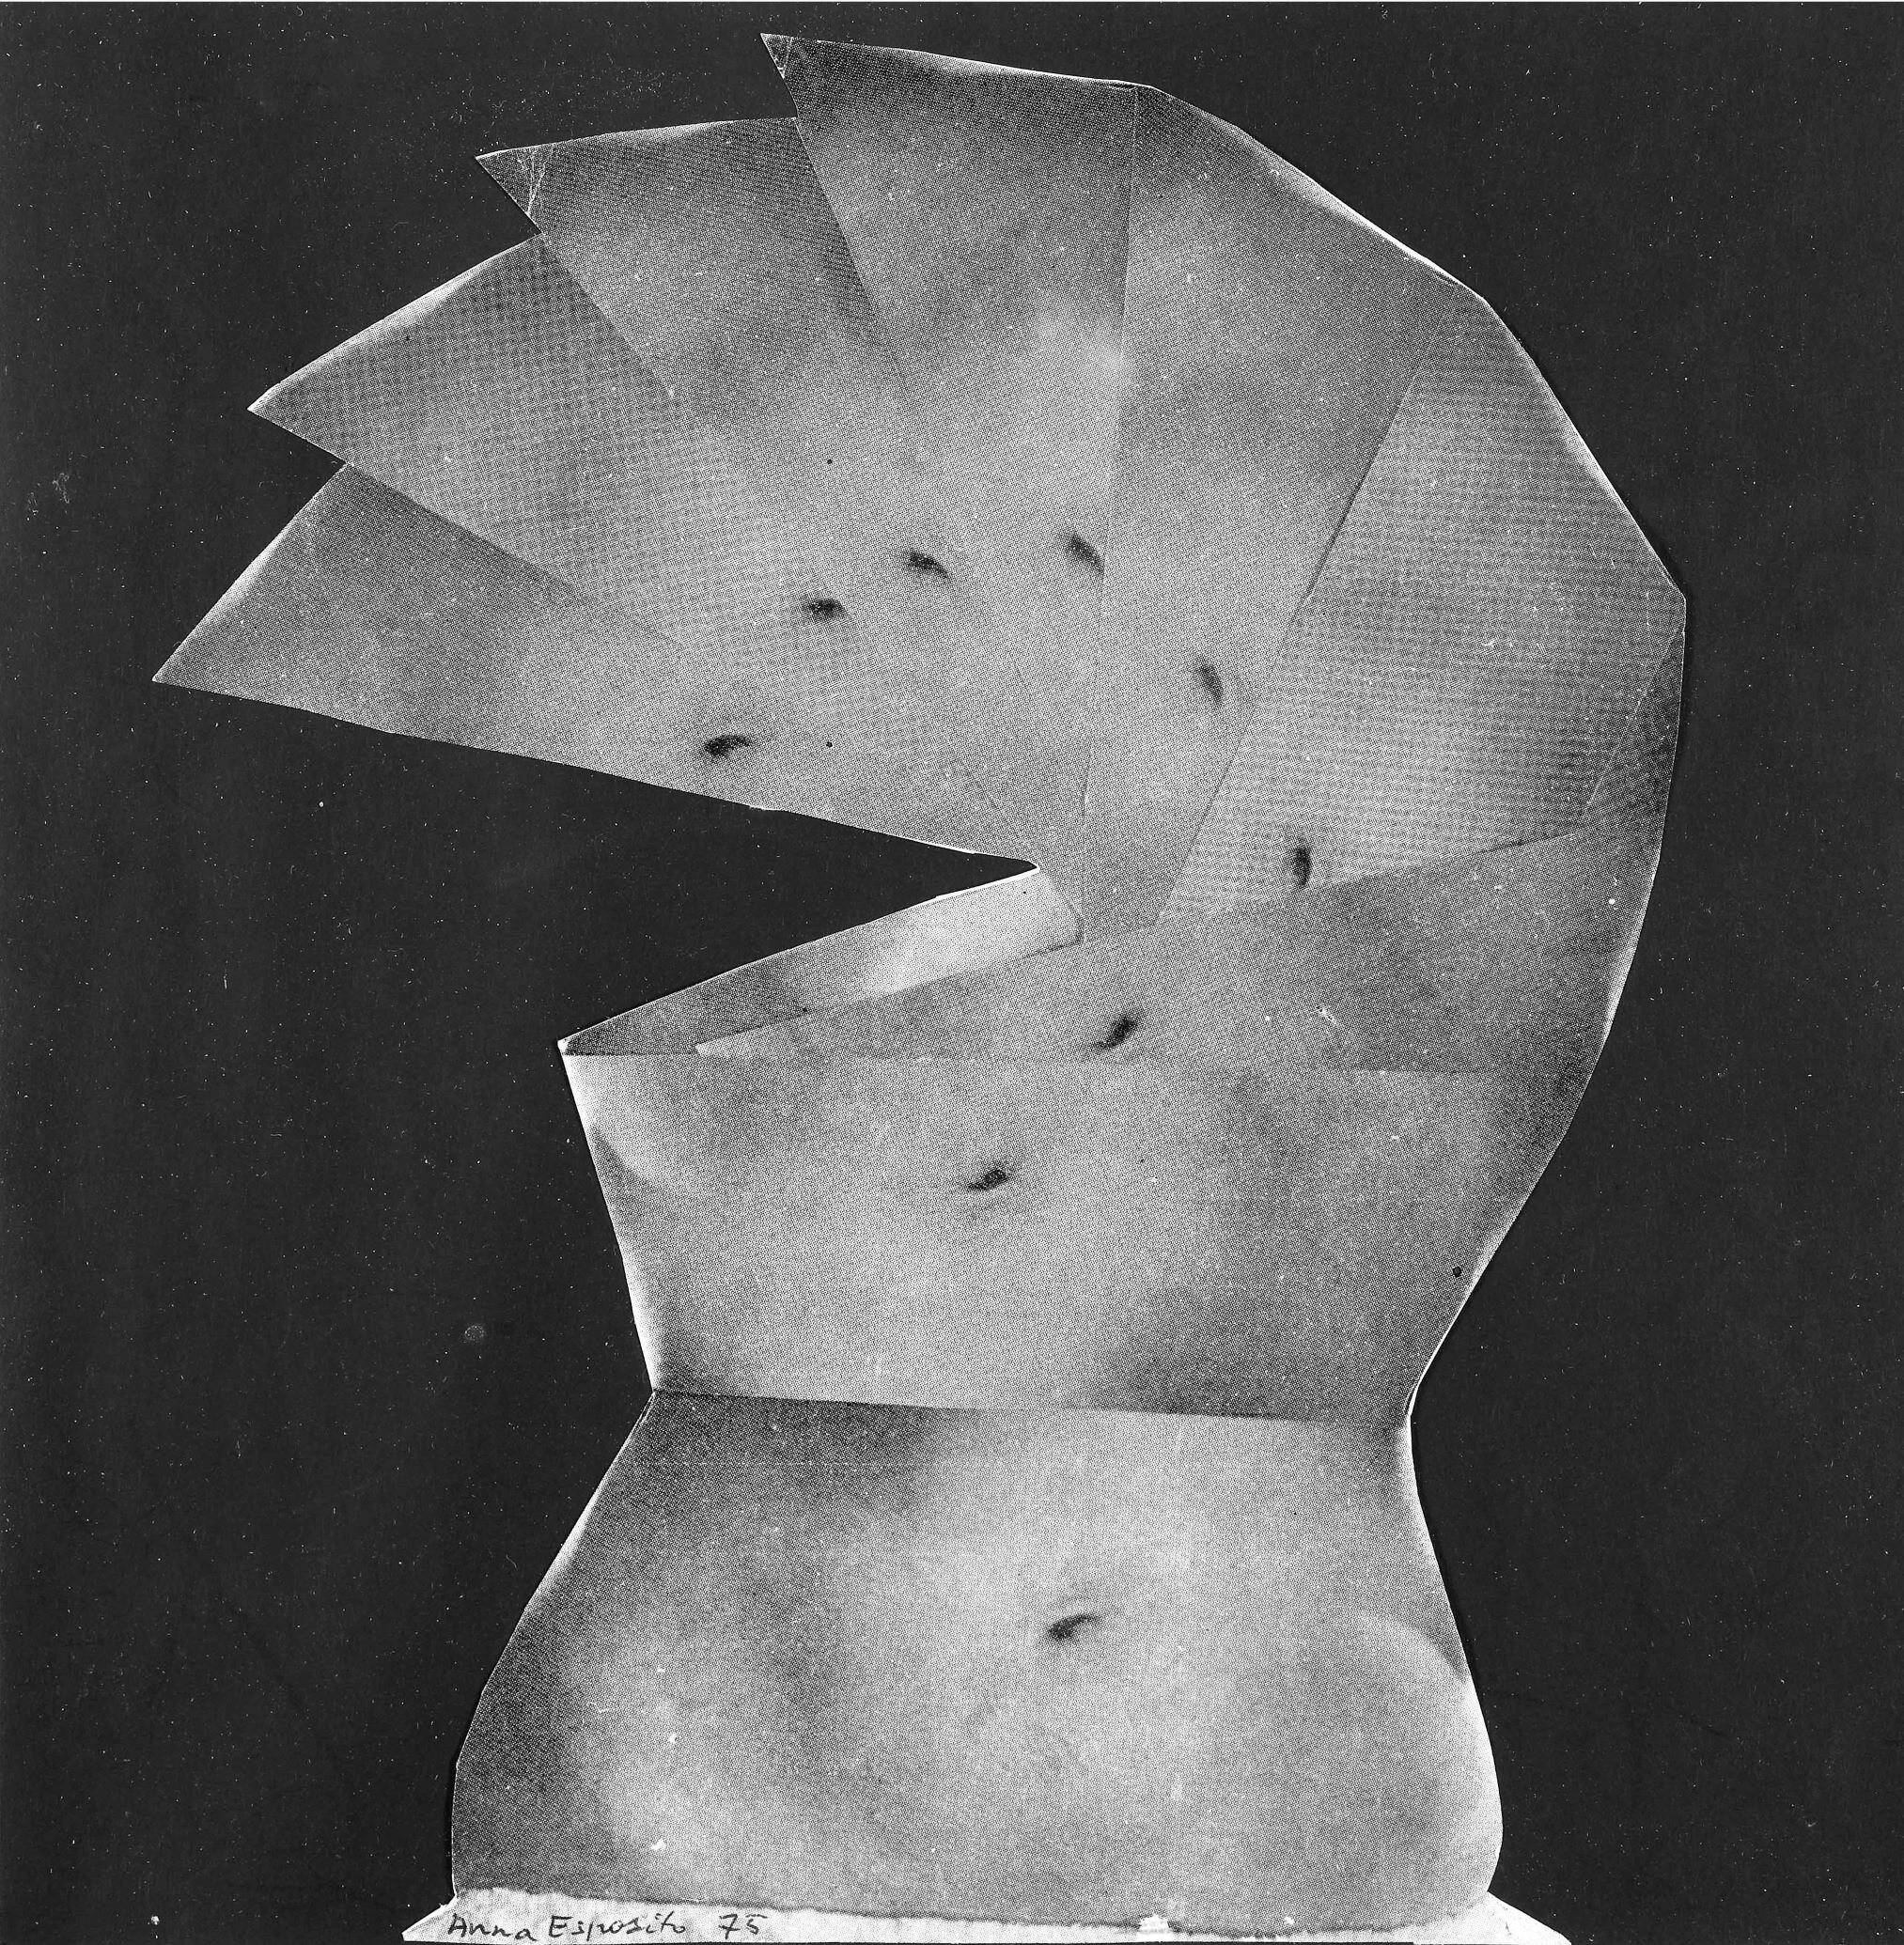 Anna Esposito, "À la guerre comme à la guerre", 1975